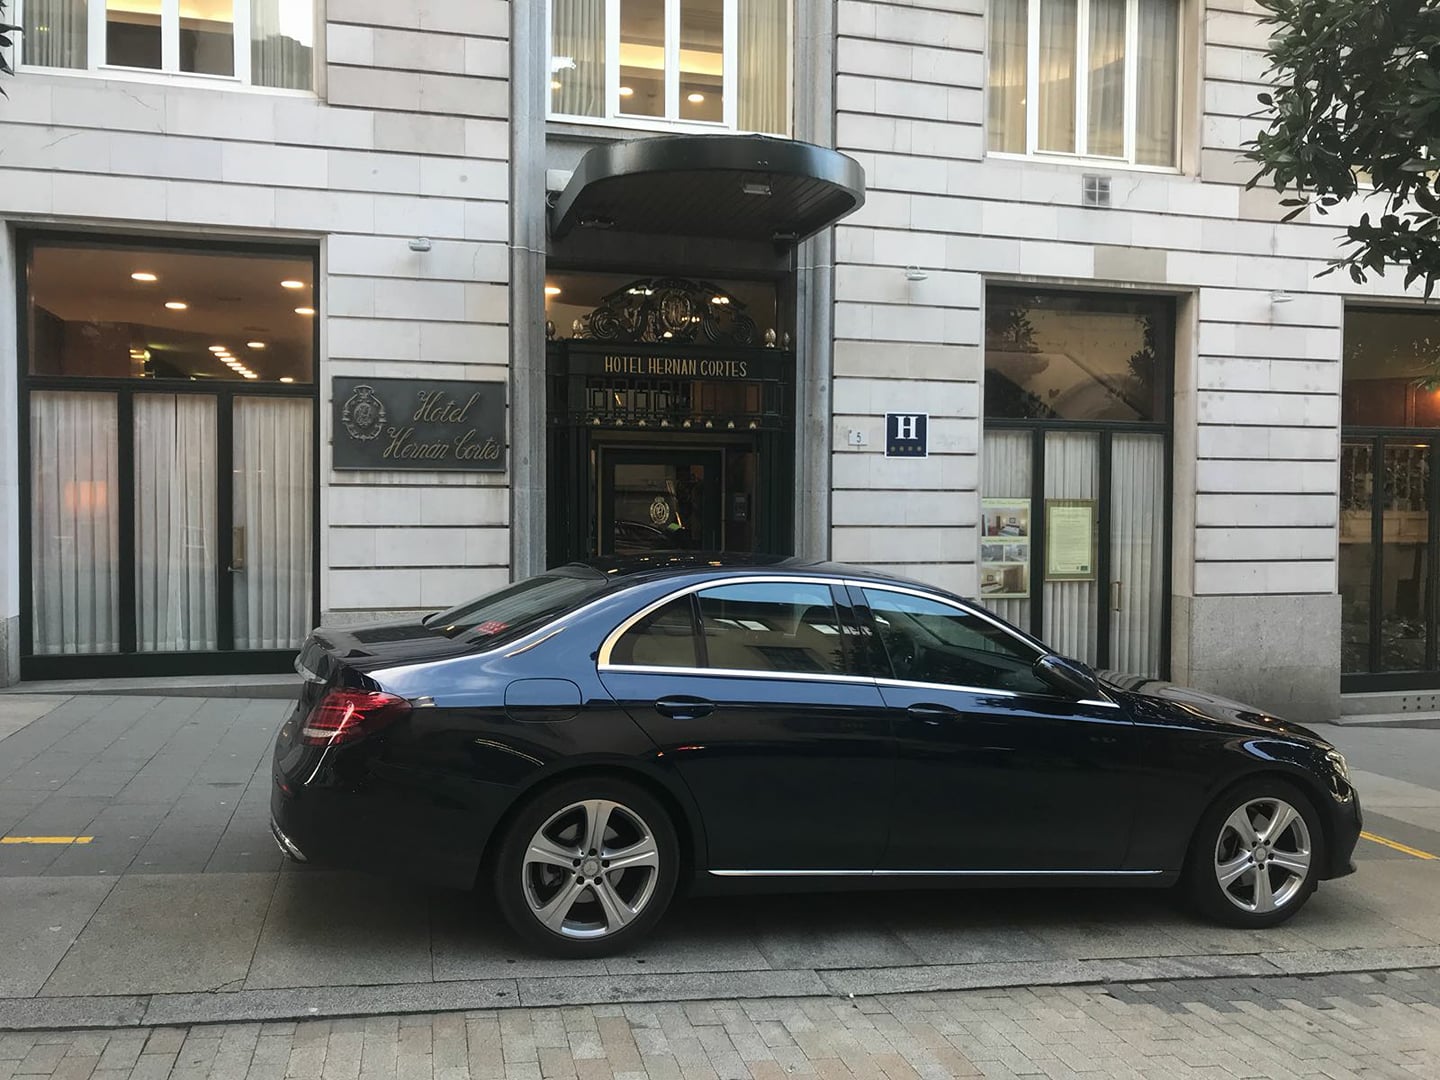 Alquiler de vehículos con conductor en Madrid - Coche negro frente al Hotel Hernán Cortés